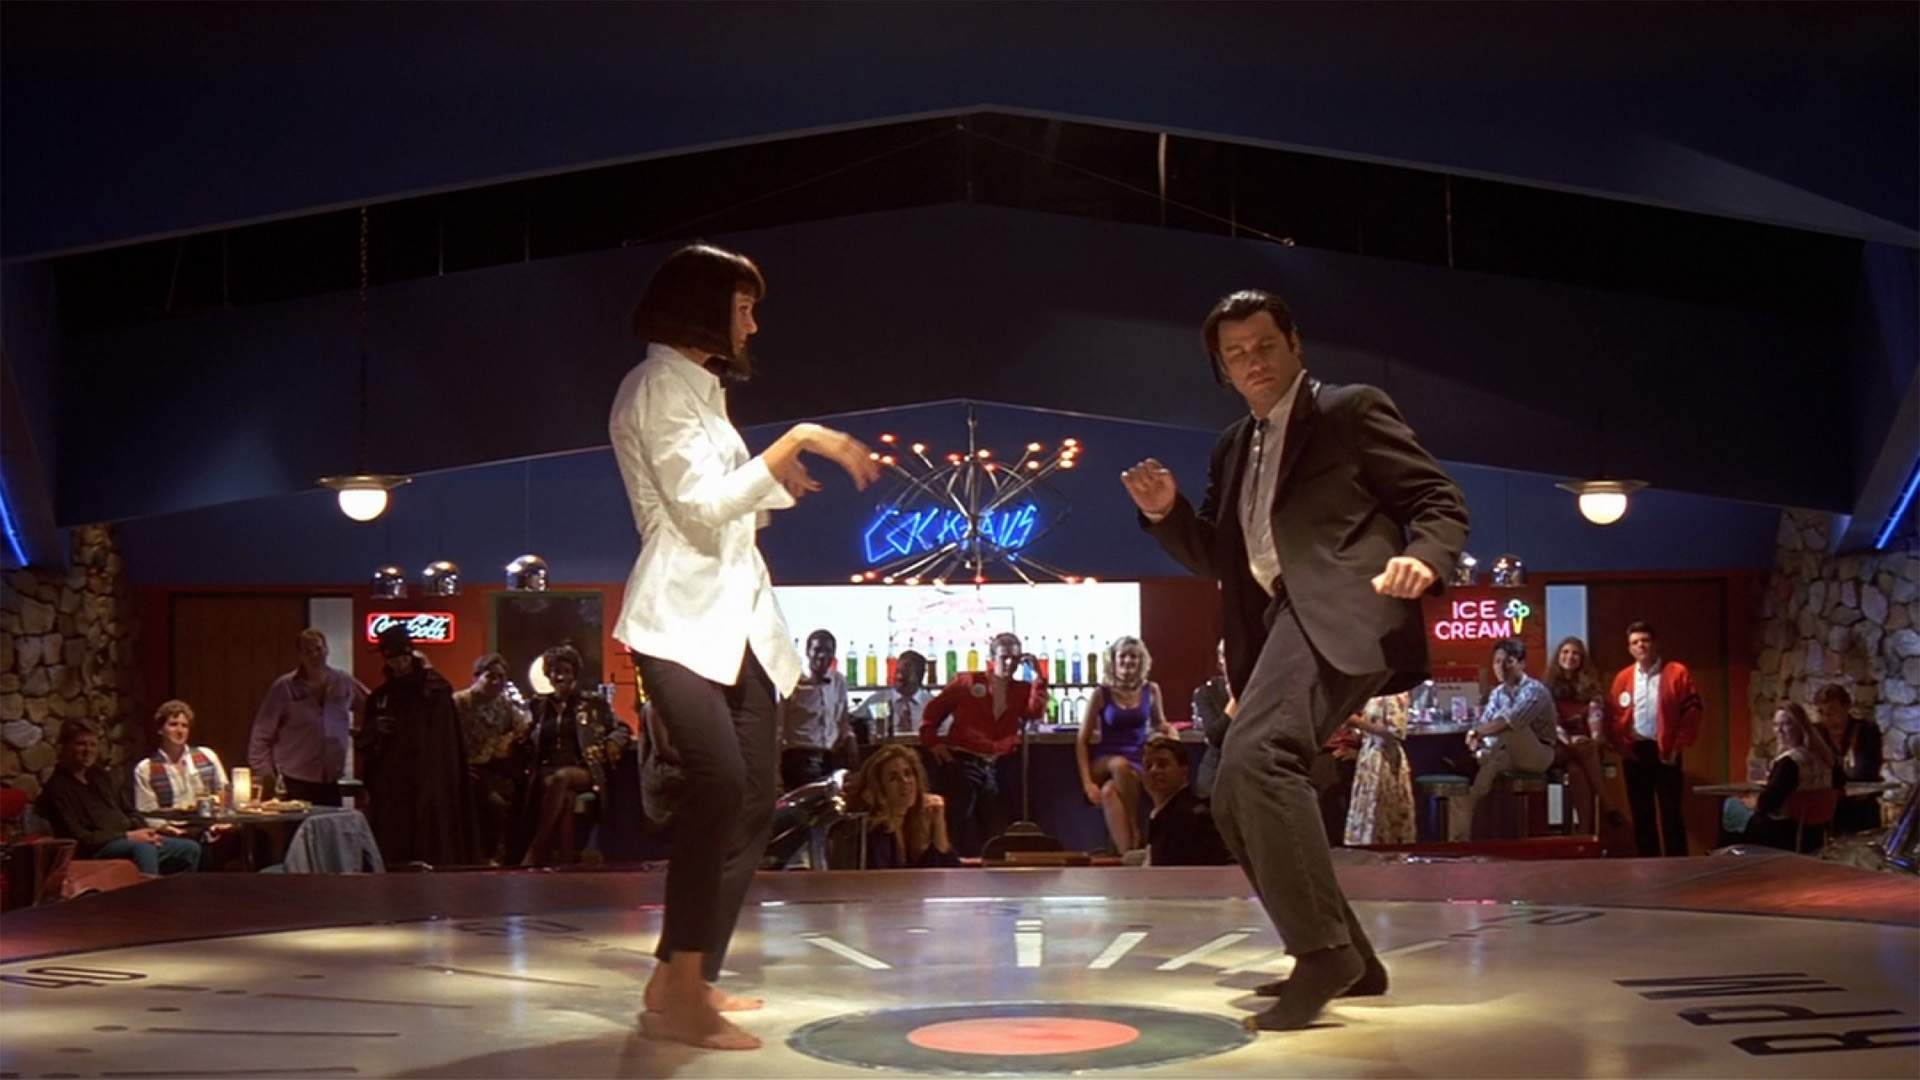 Twist Dance: 25th Anniversary of Pulp Fiction, John Travolta, Uma Thurman, Dance contest. 1920x1080 Full HD Wallpaper.